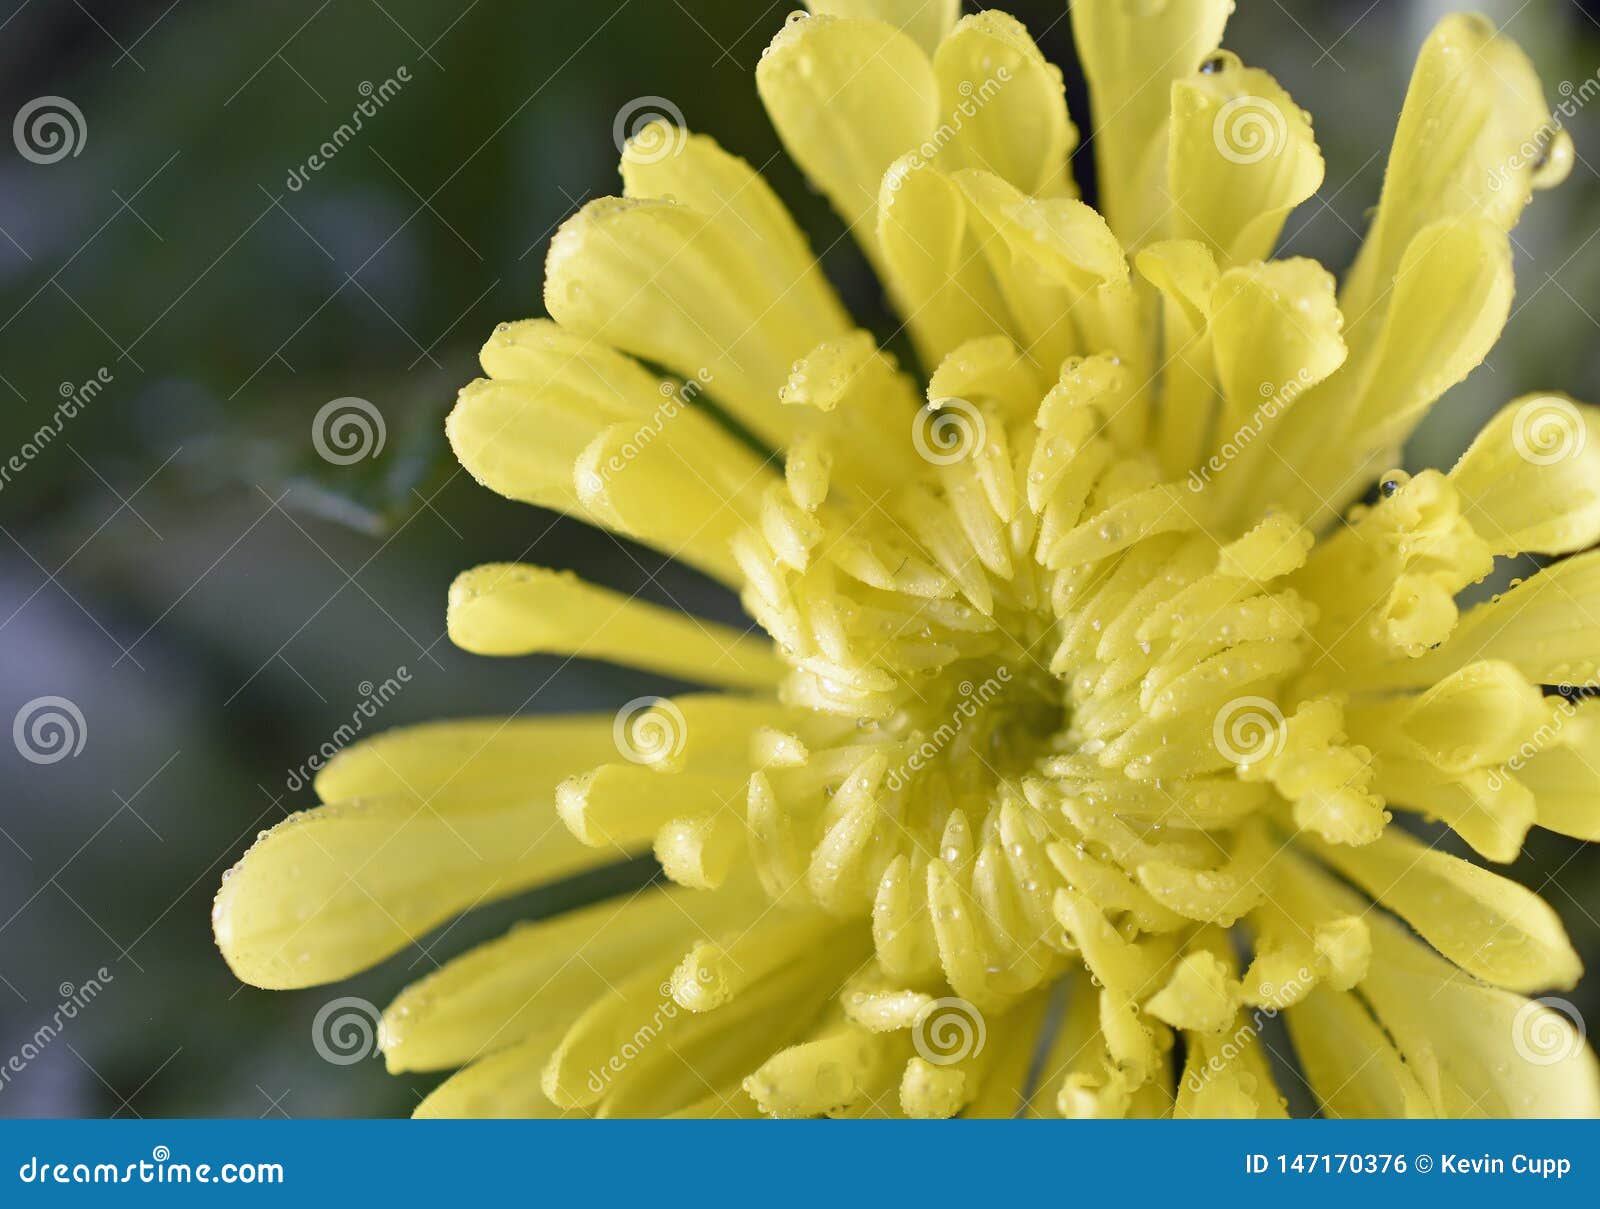 chrysanthemum flower after a warm rain